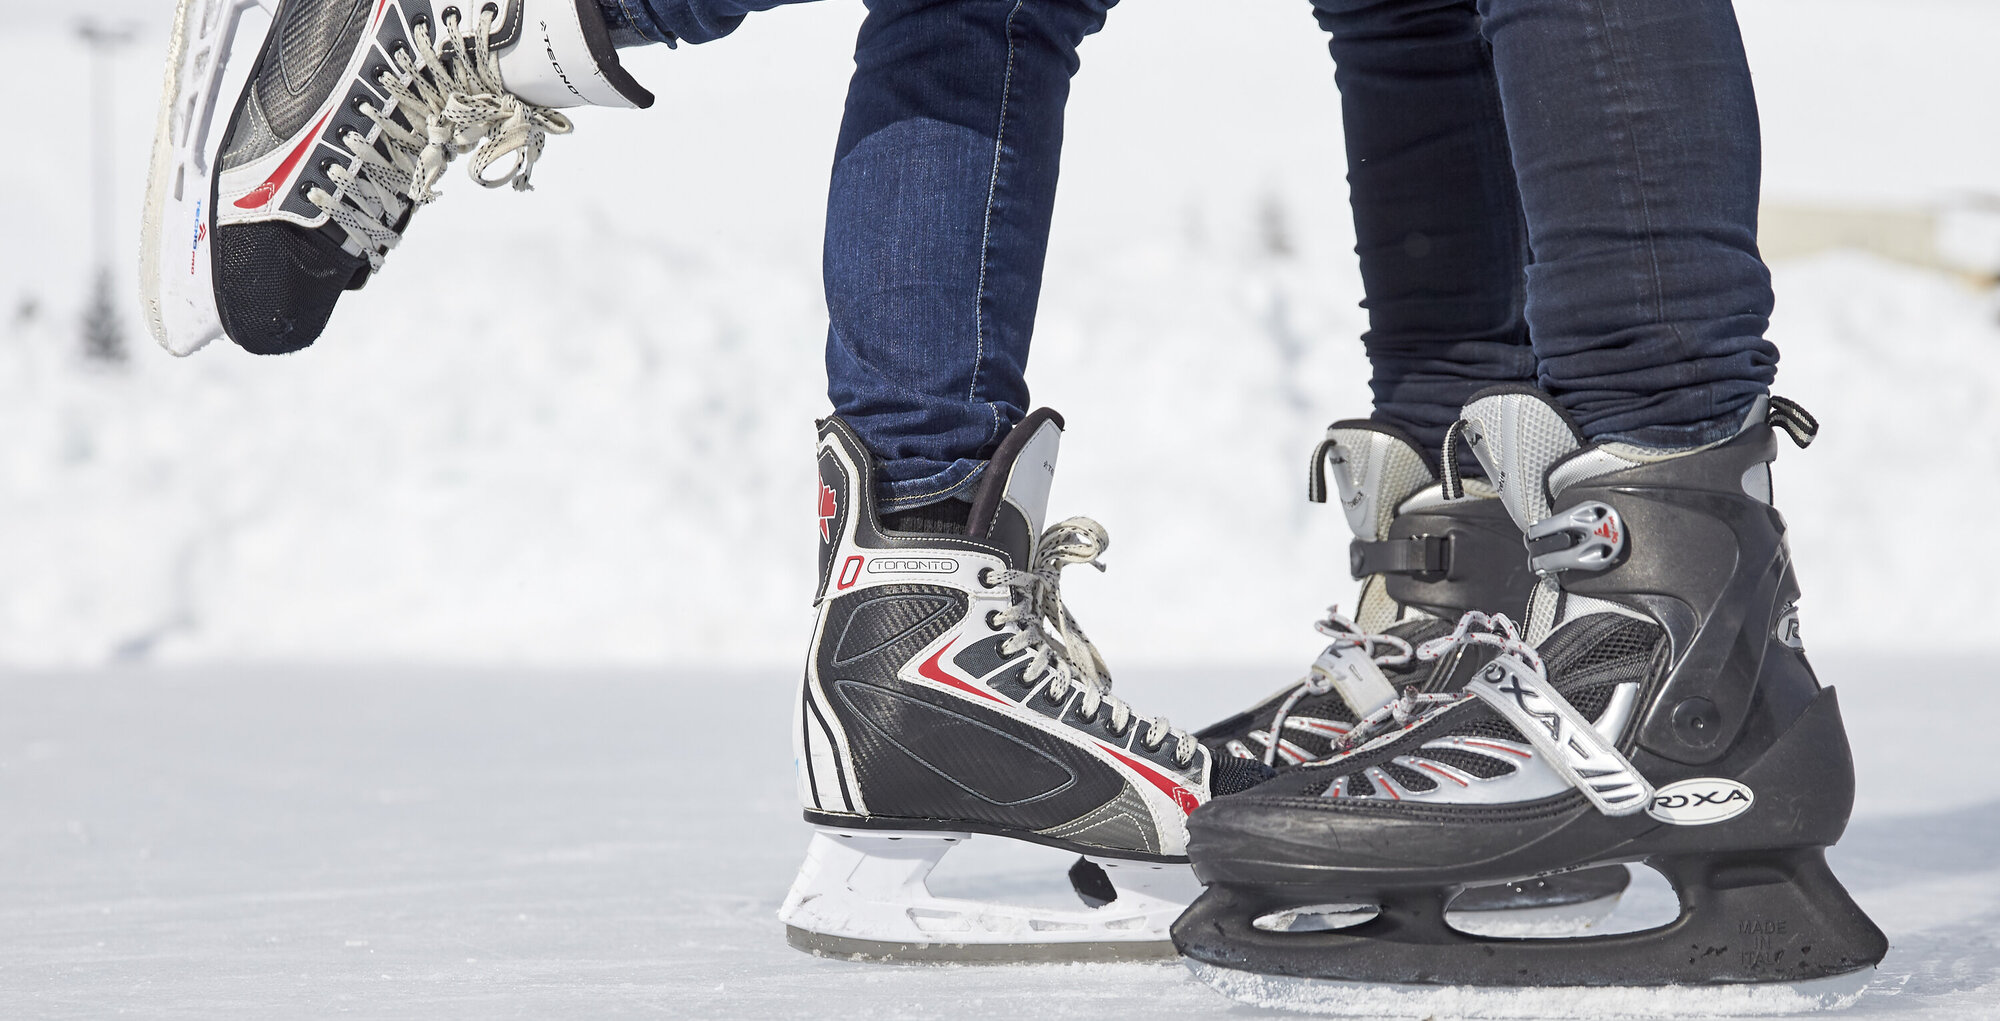  Eislaufen, 25.2.2018, Ischgl